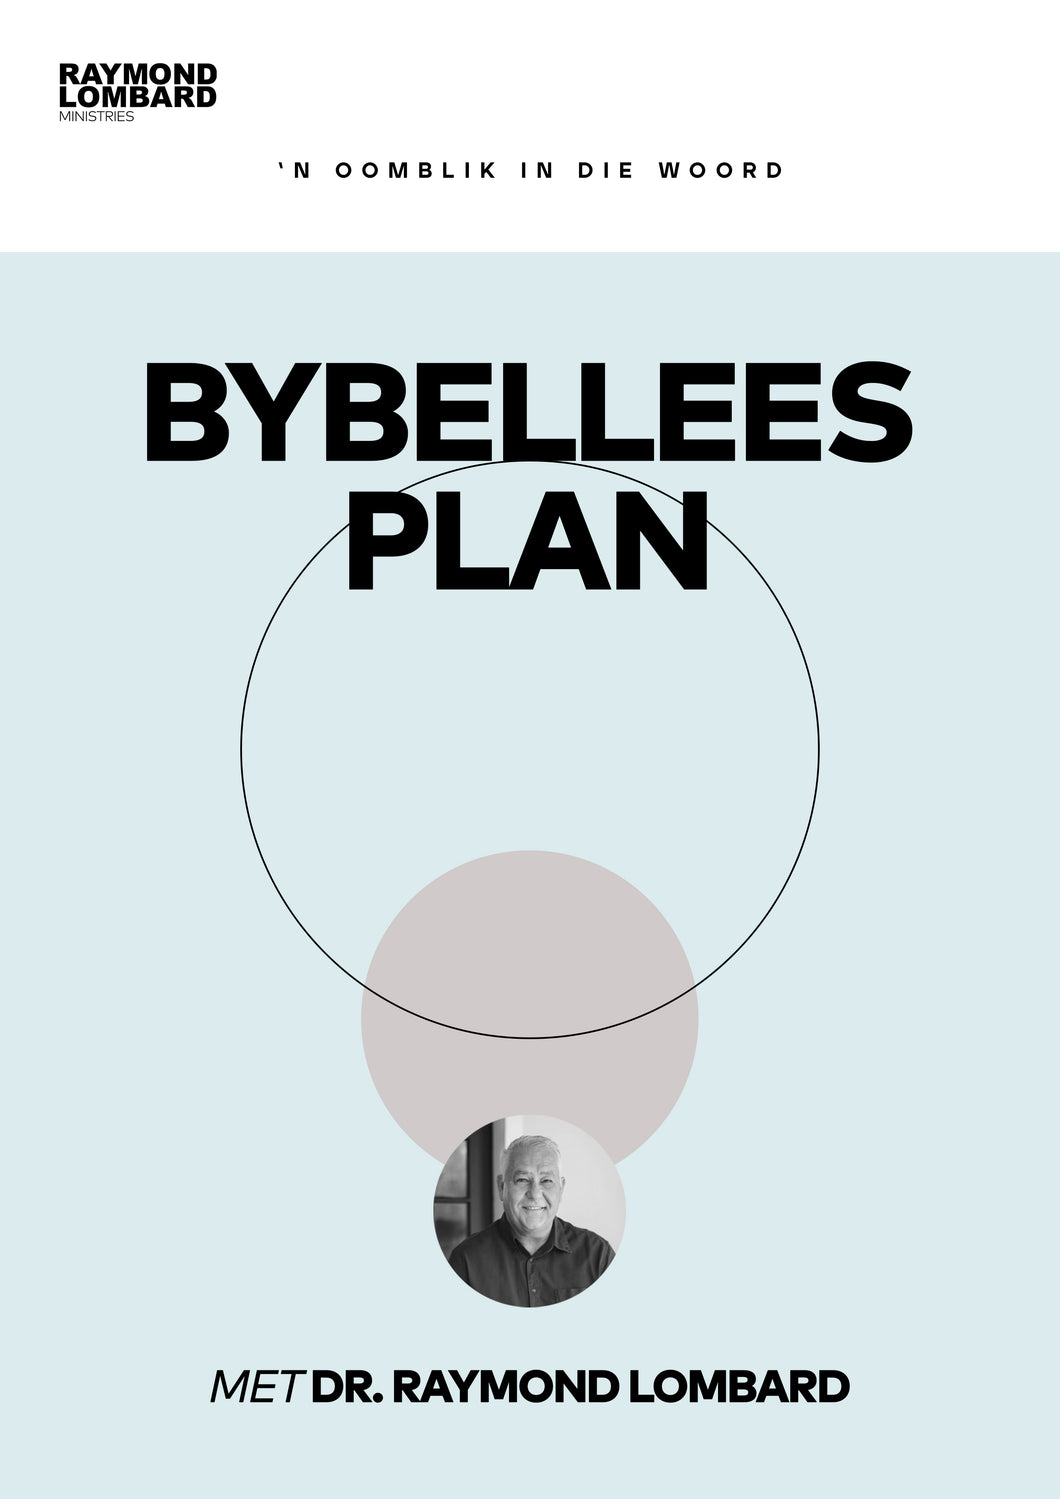 BYBELLEES PROGRAM